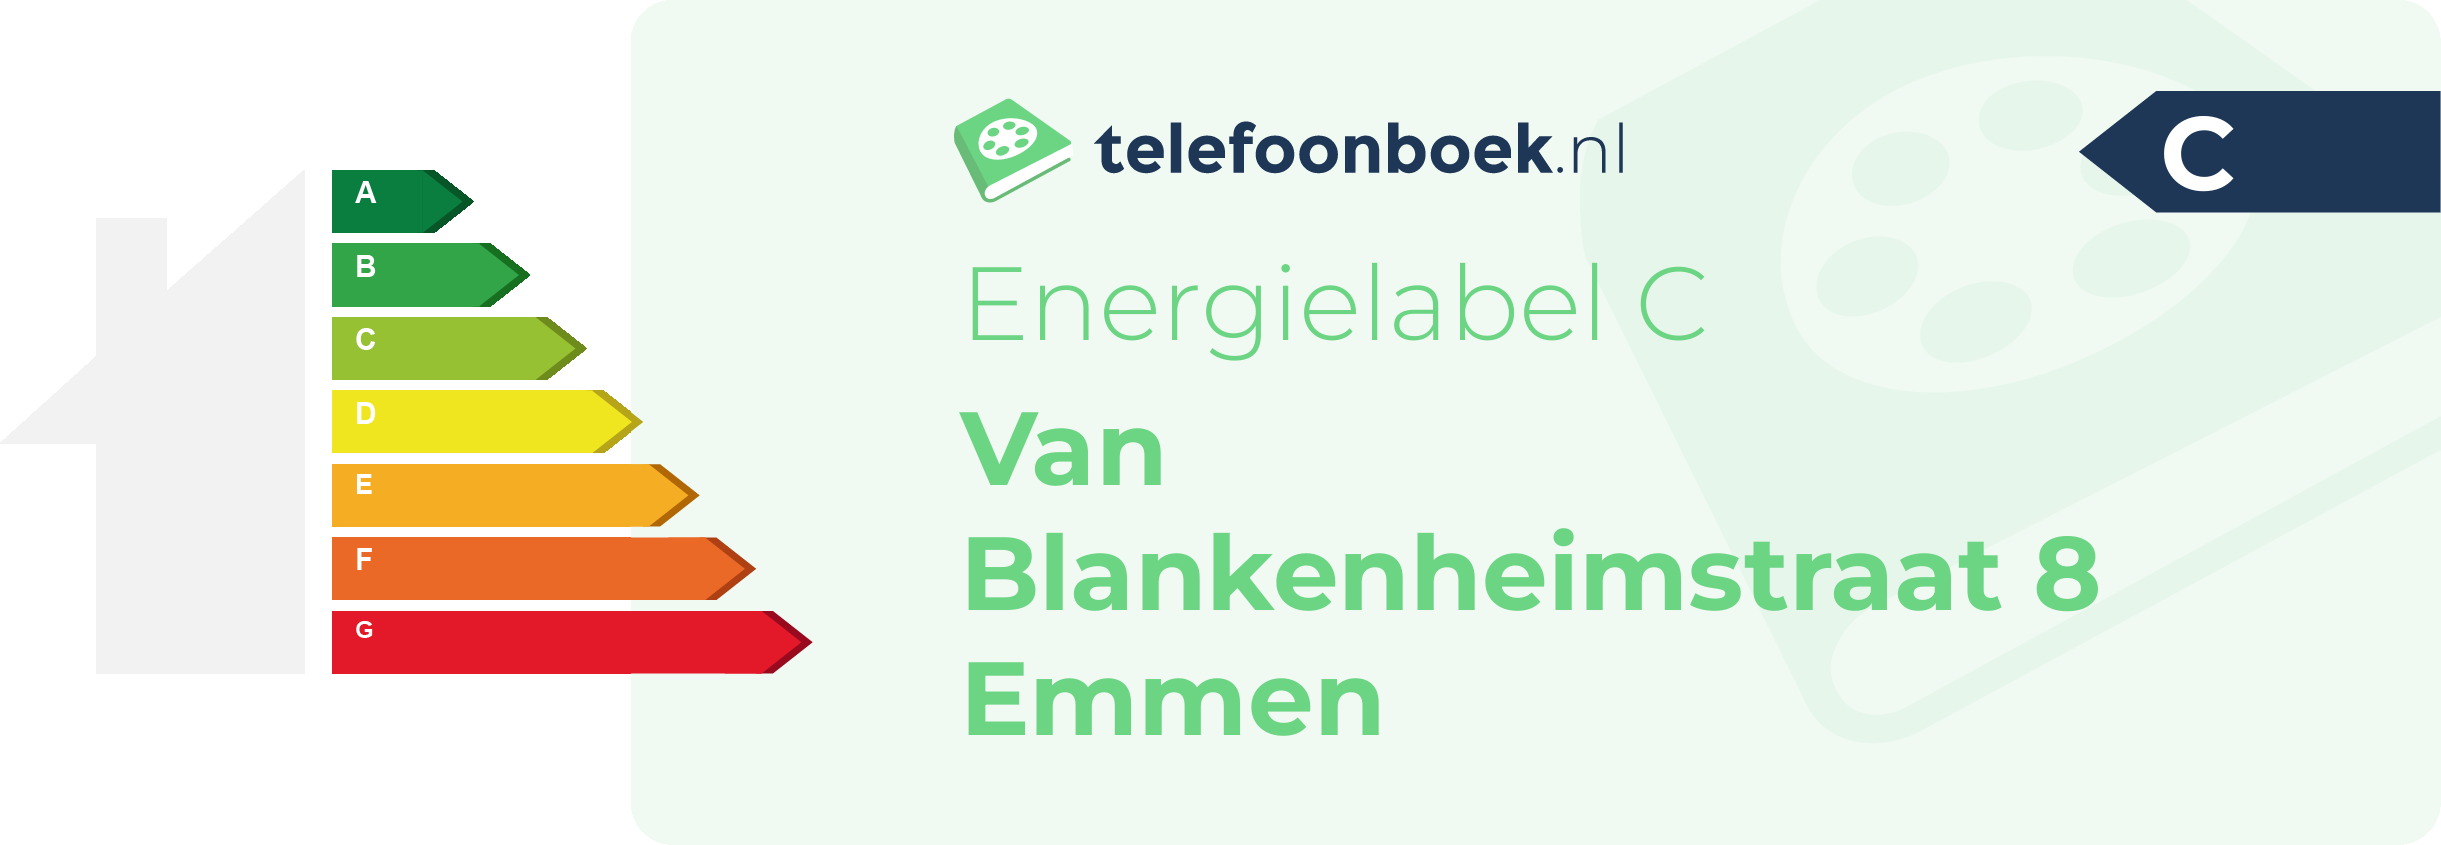 Energielabel Van Blankenheimstraat 8 Emmen